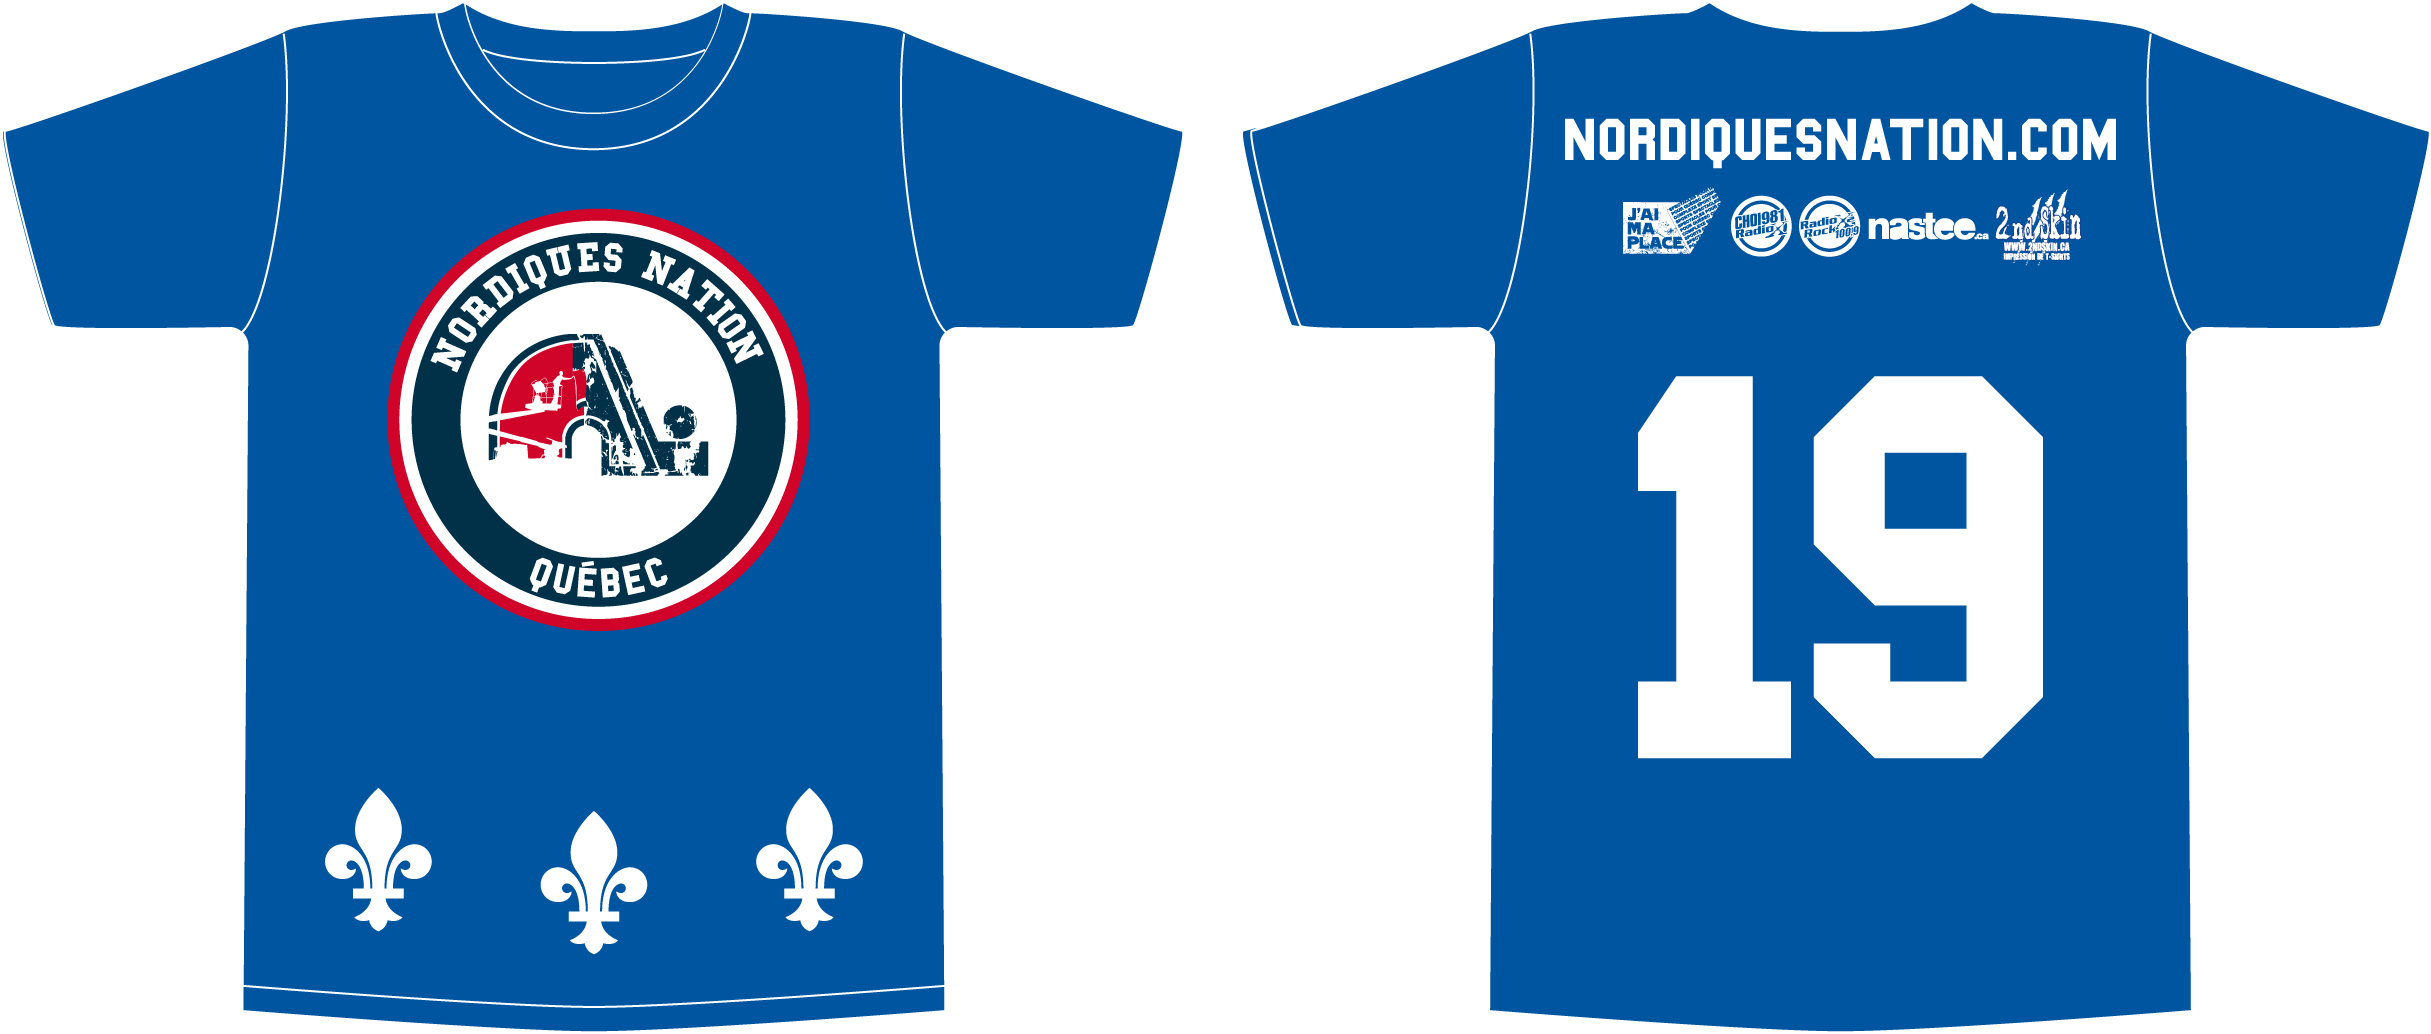 t-shirt Nordiques Nation